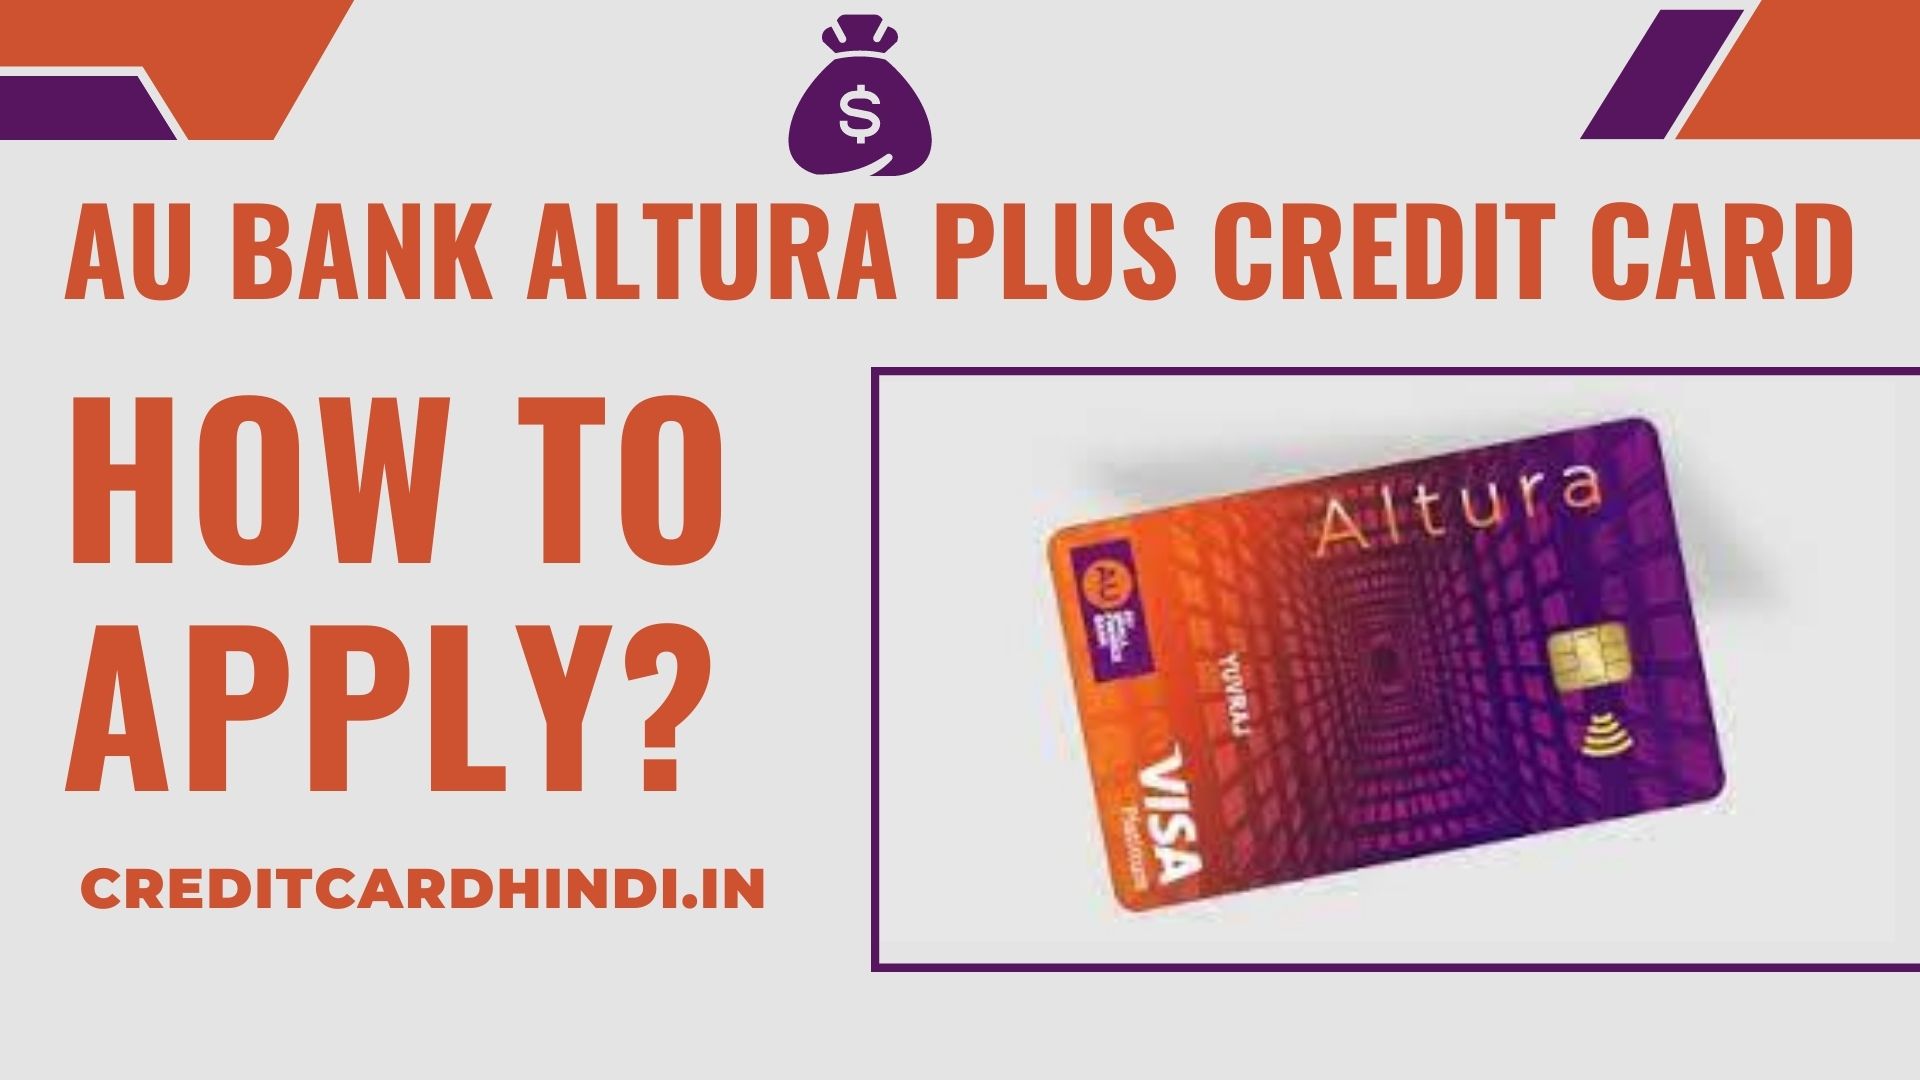 AU Bank Altura Plus Credit Card के लिए कैसे अप्लाई करें?